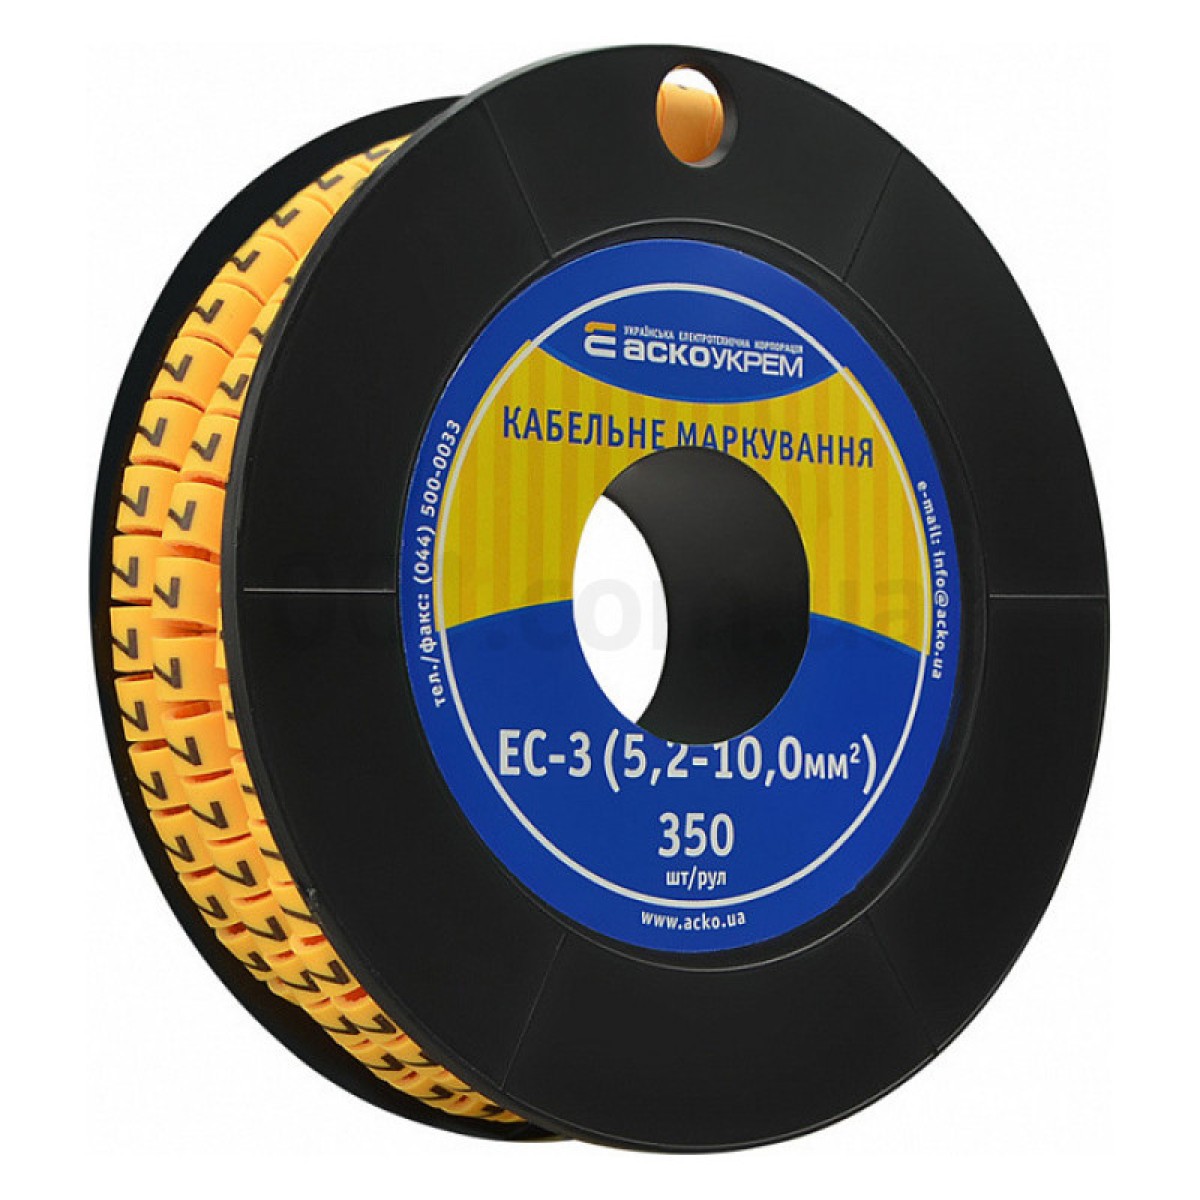 Маркування ЕС-3 для кабелю 5,2-10,0 мм² символ «7» (рулон 250 шт.), АСКО-УКРЕМ 256_256.jpg